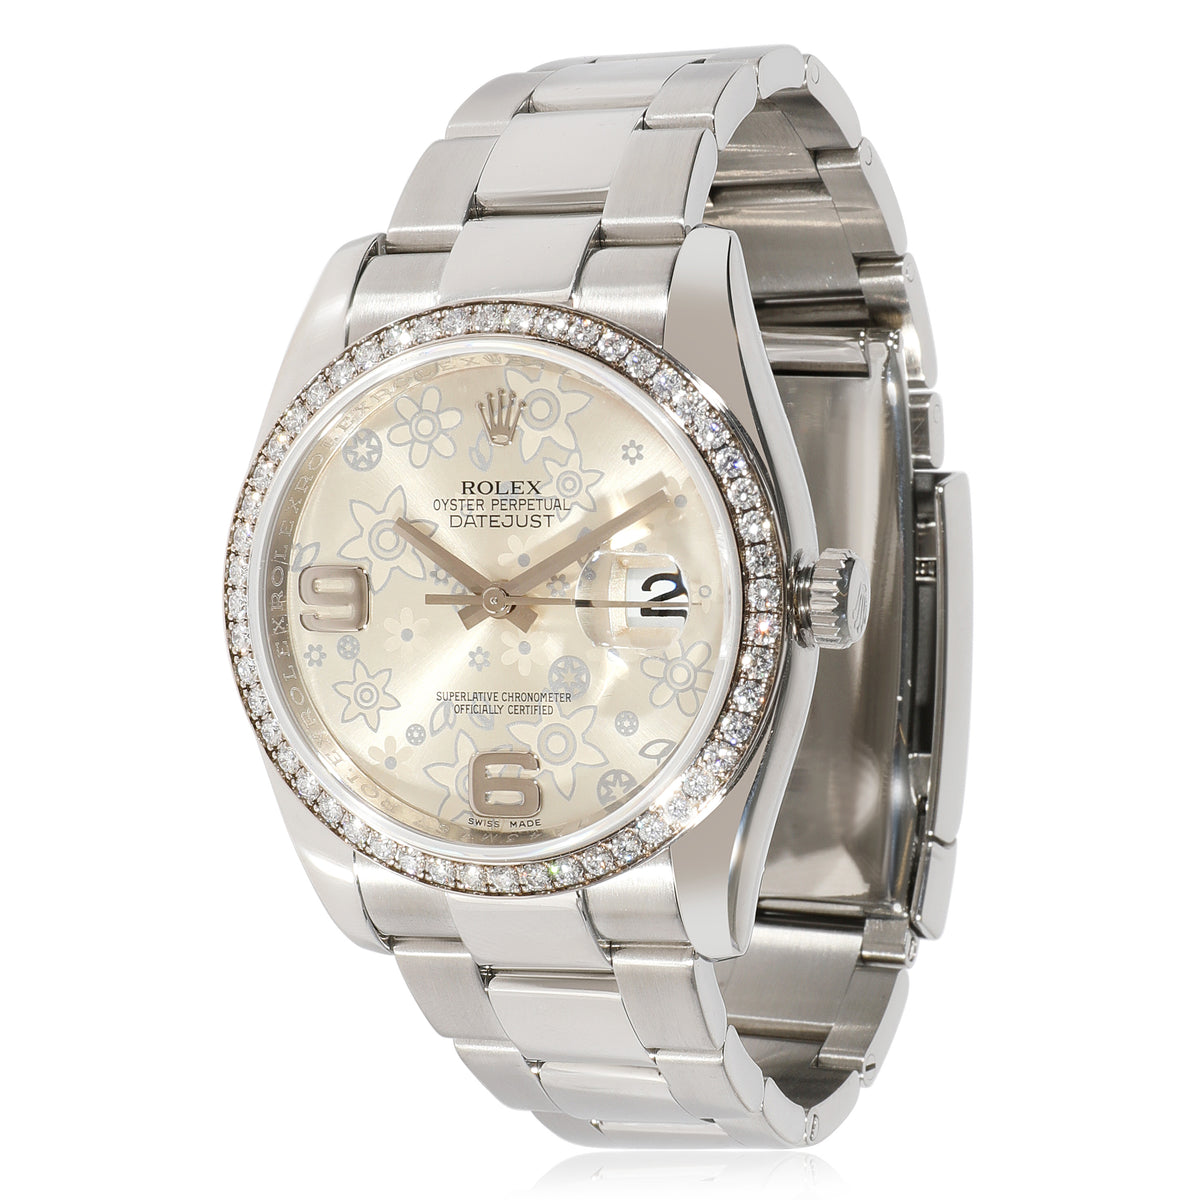 Rolex Datejust 116244 Unisex Watch in 18kt Stainless Steel/White Gold